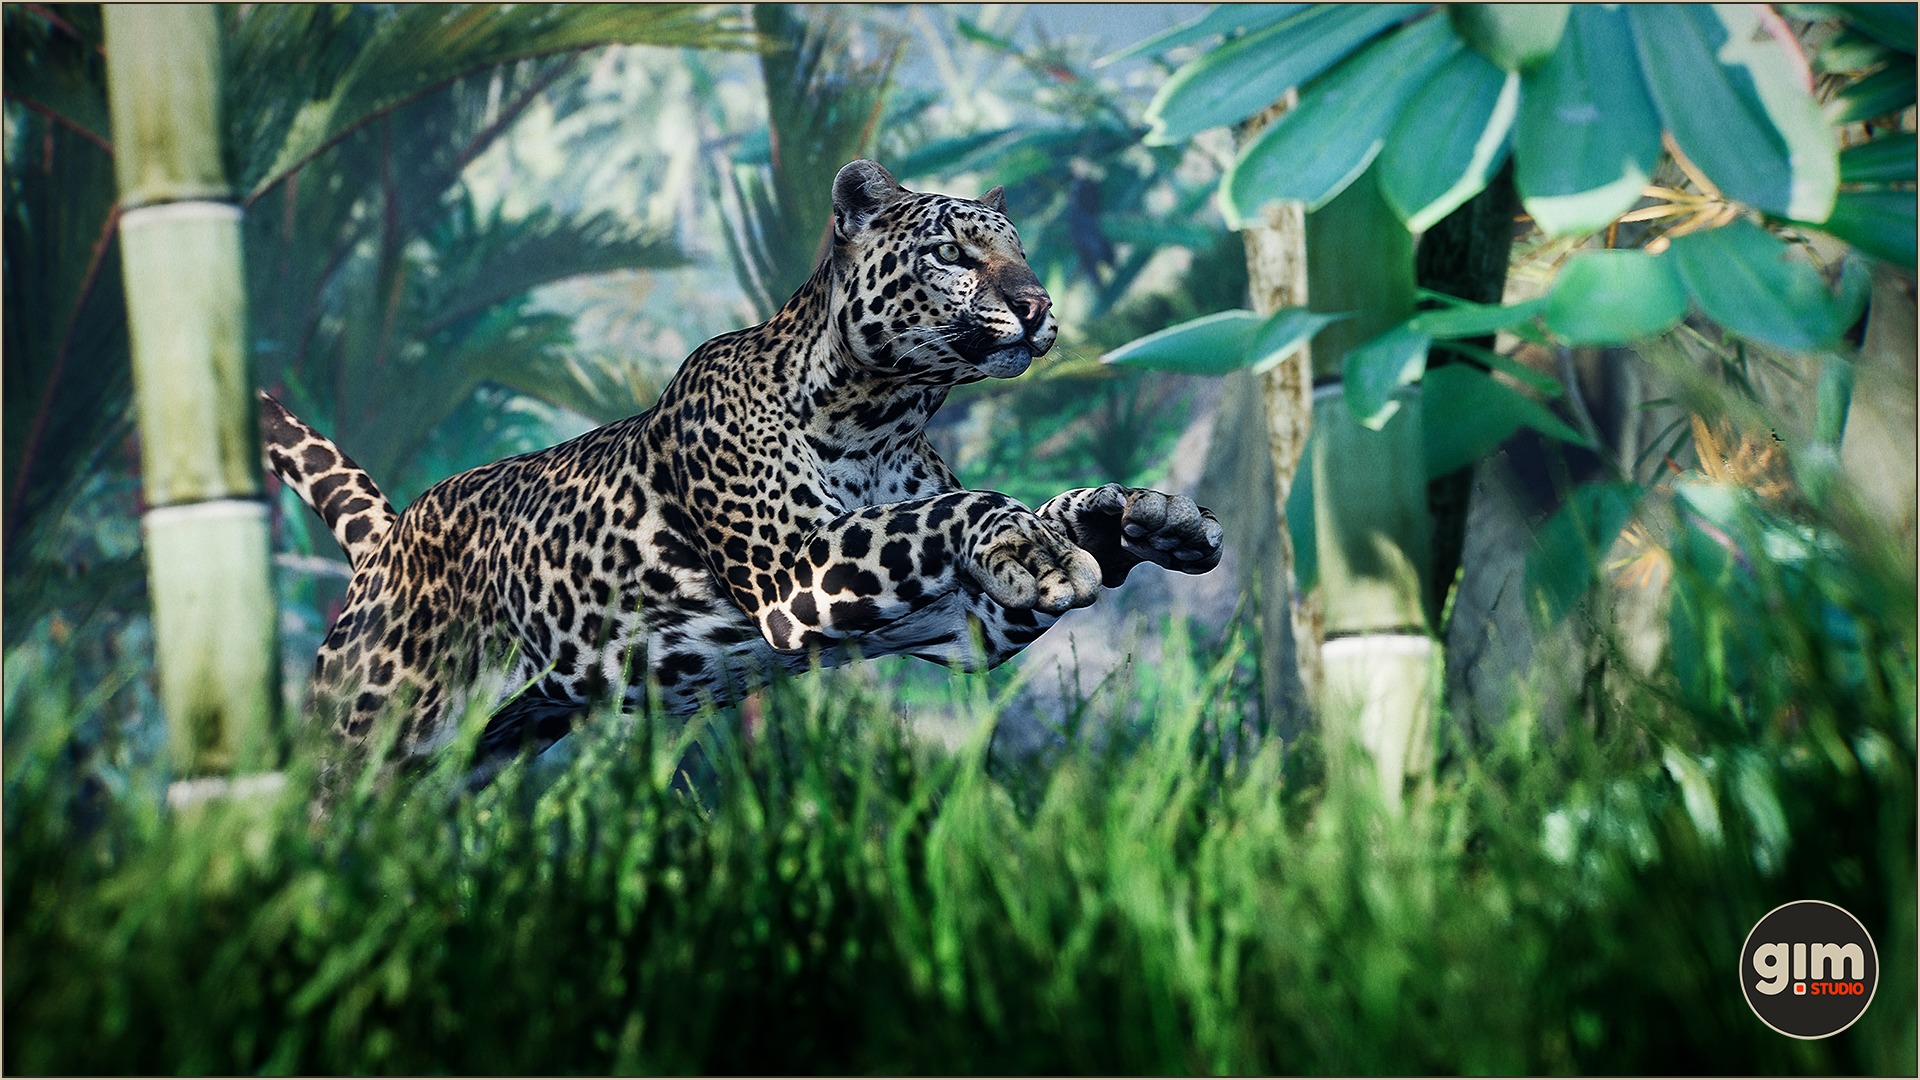 Male Leopard jumping effortlessly